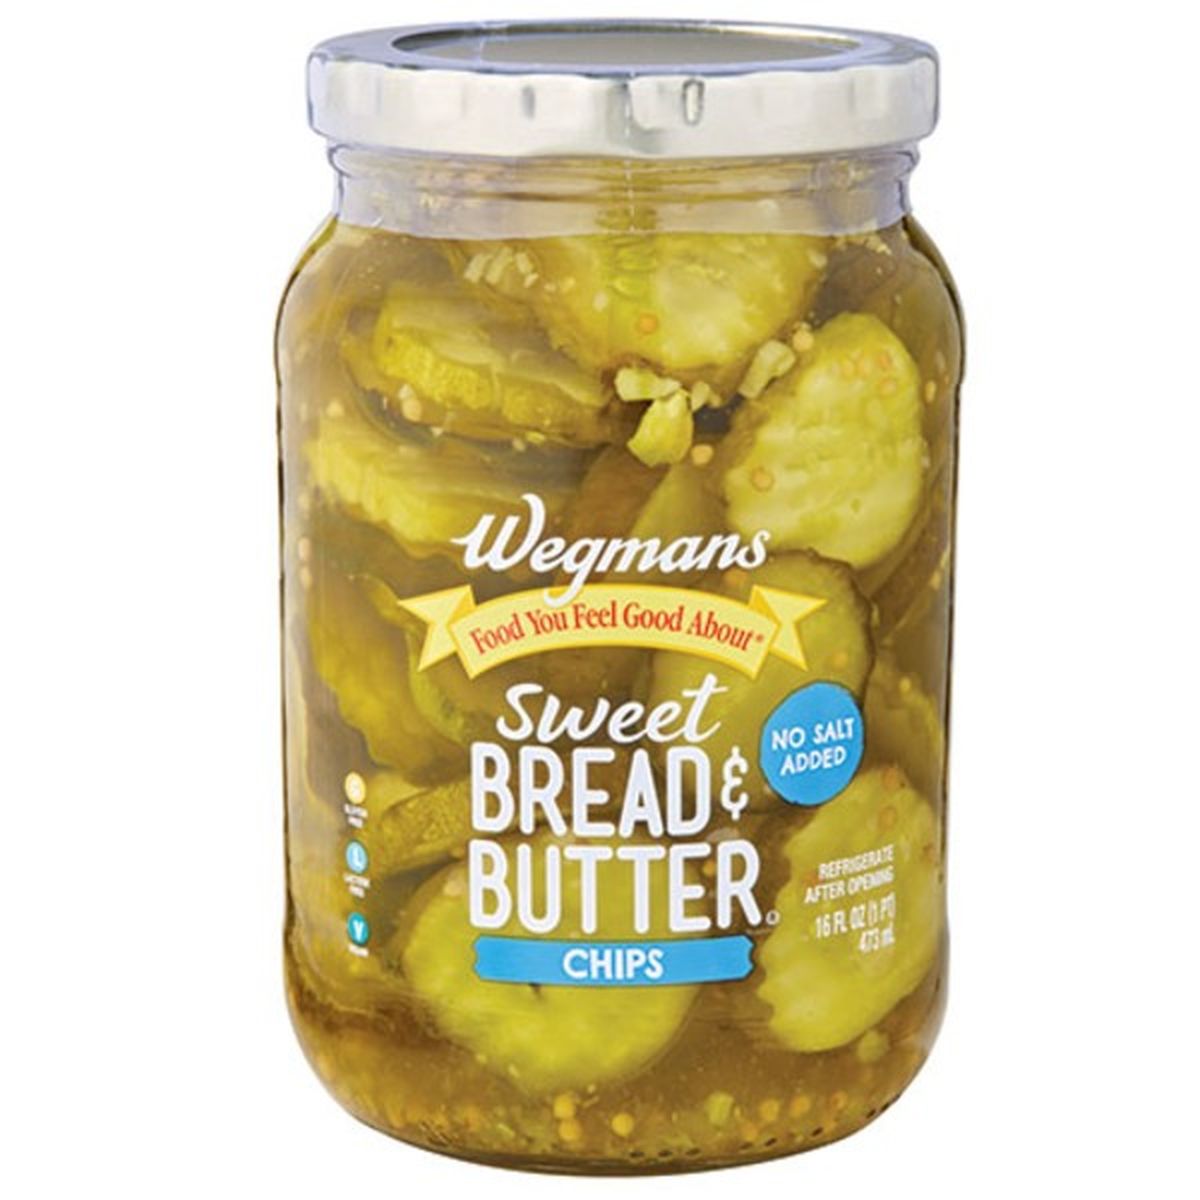 Calories in Wegmans No Salt Added Bread & Butter Pickle Chips